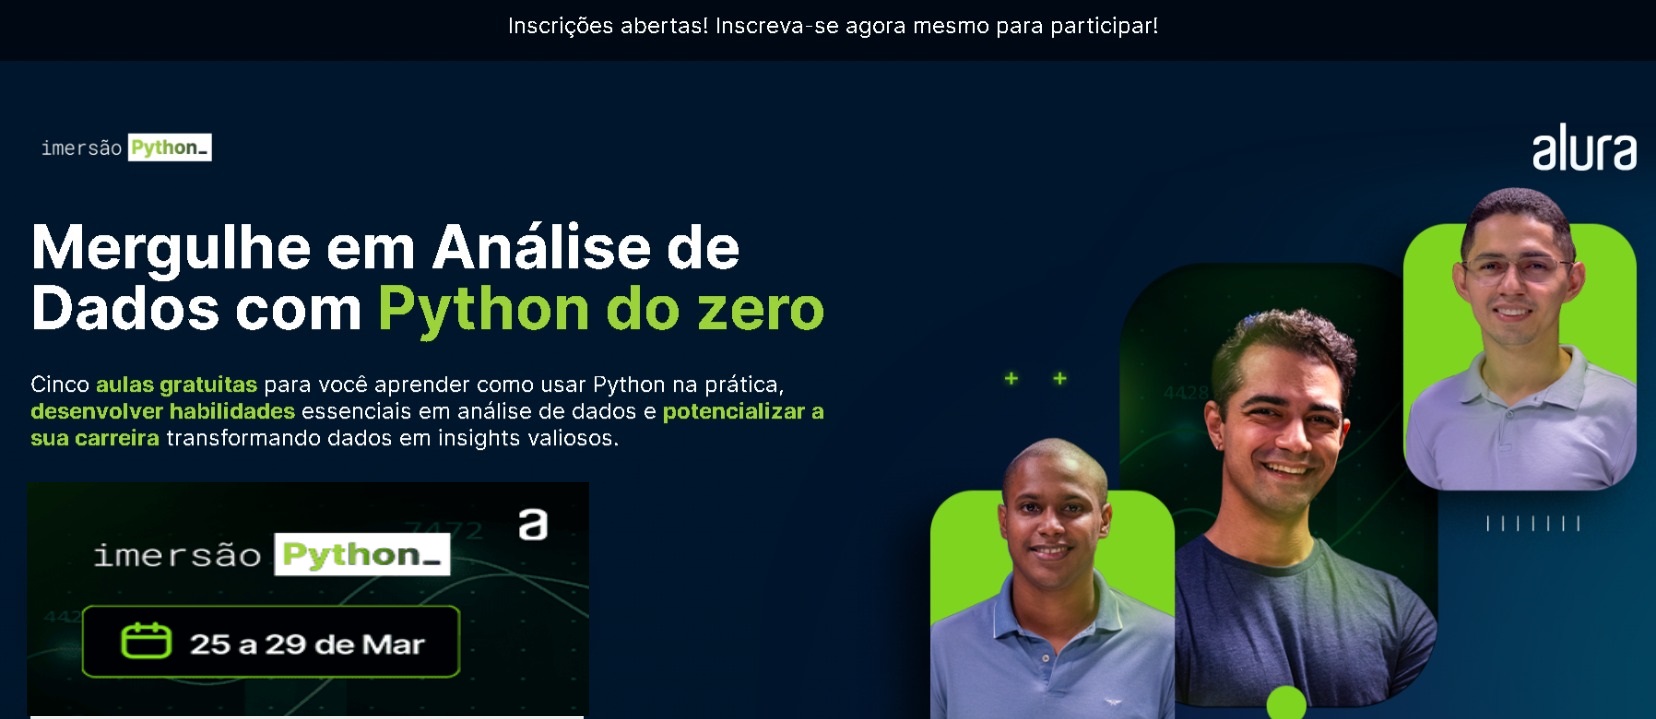 Imersão Python Do Excel à Análise de Dados www.alura.com.br